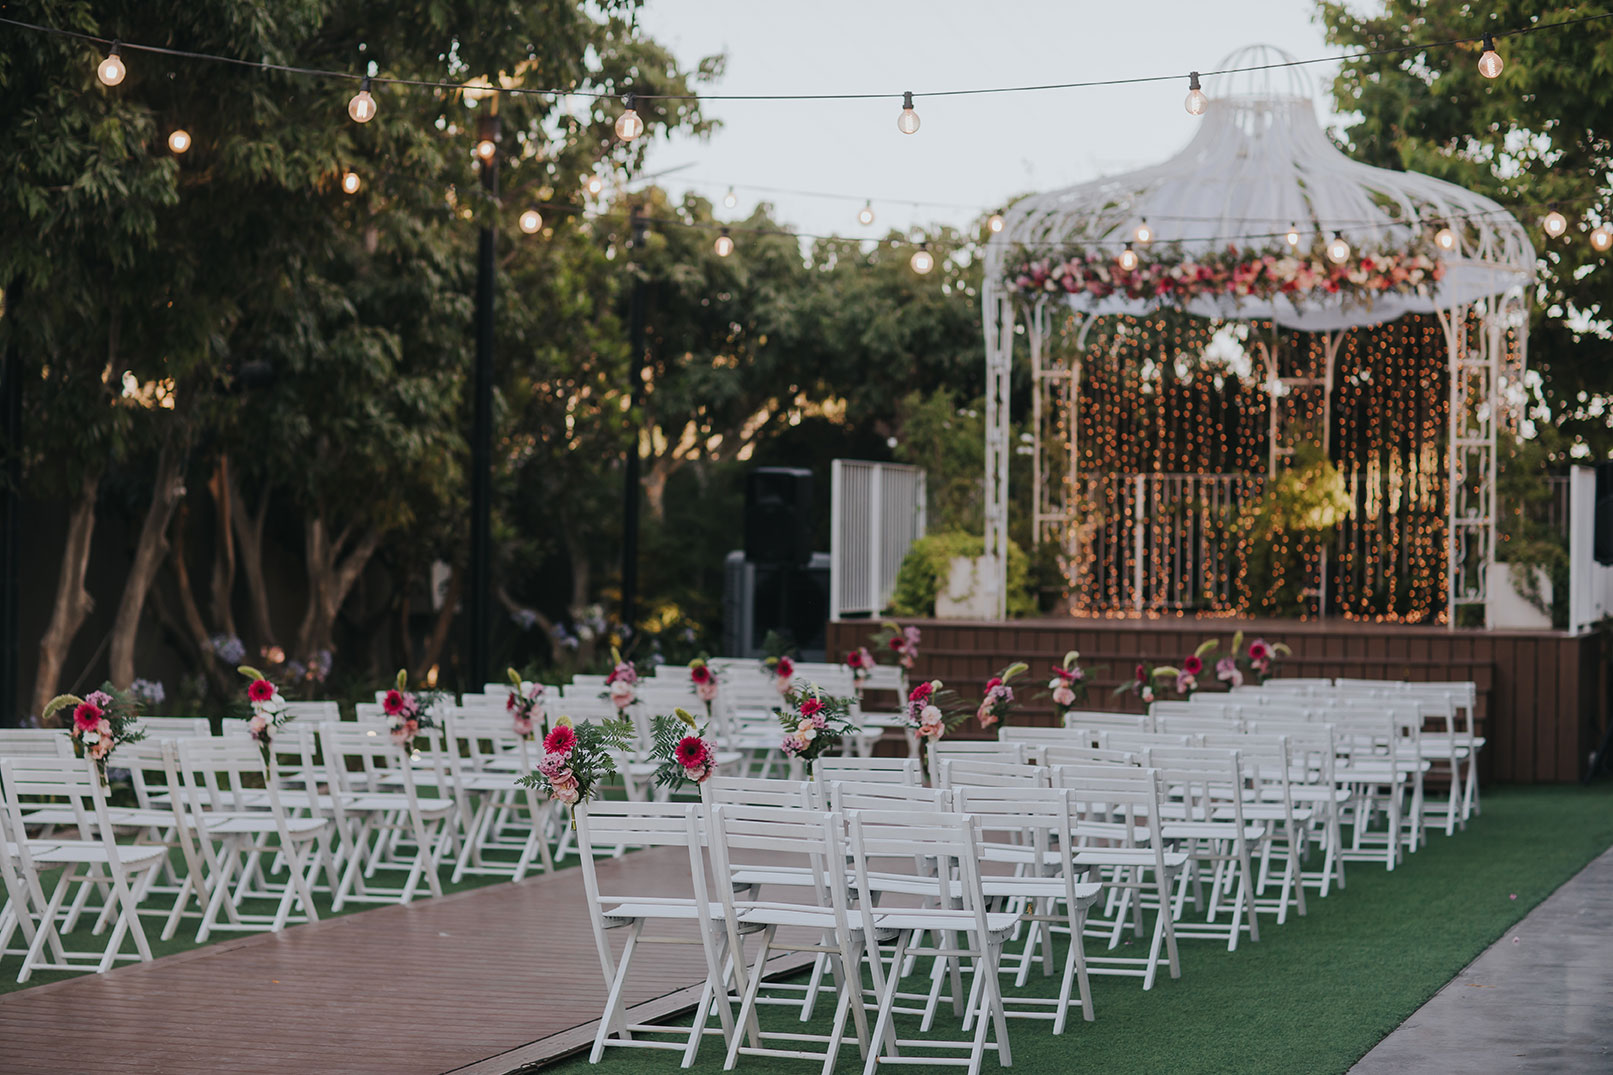 גני אירועים לחתונה יש המון, אך רק גן אחד מושלם עבורכם